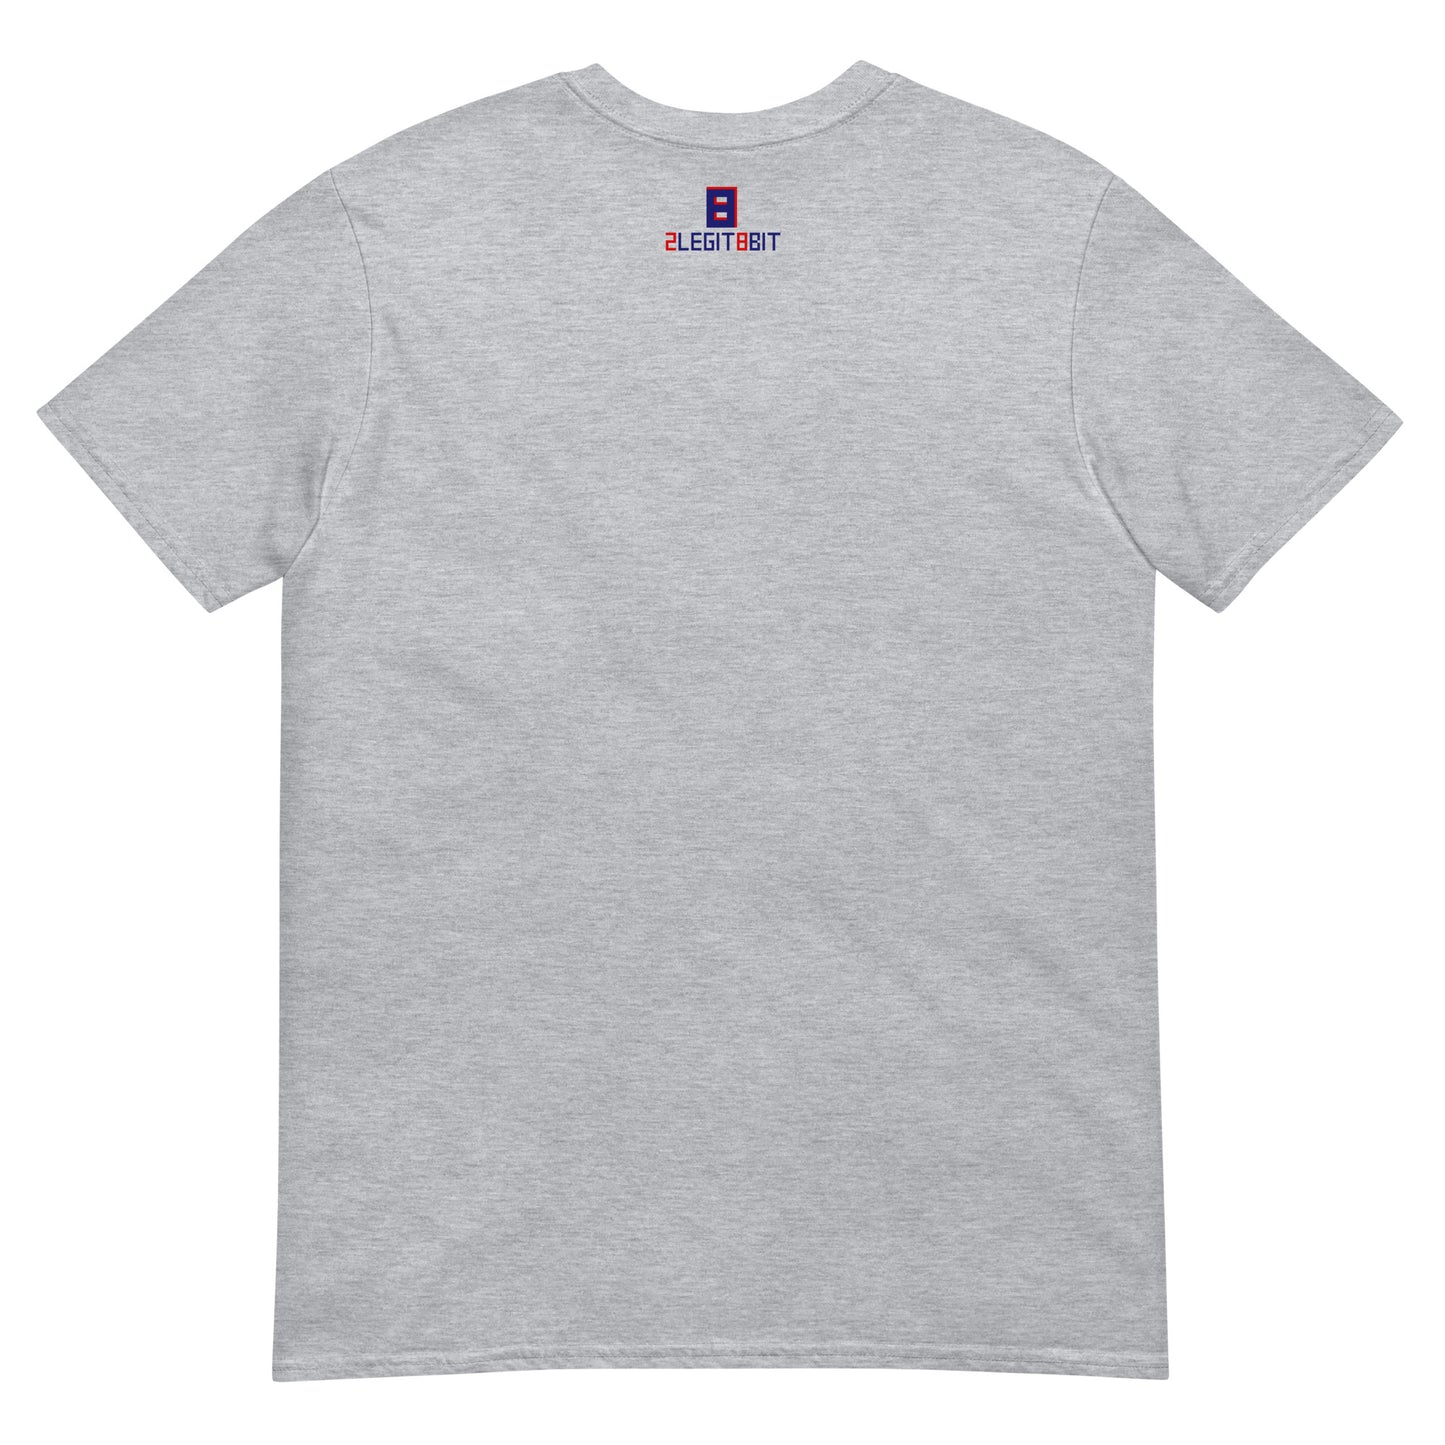 Piqua Indians Short-Sleeve Unisex T-Shirt